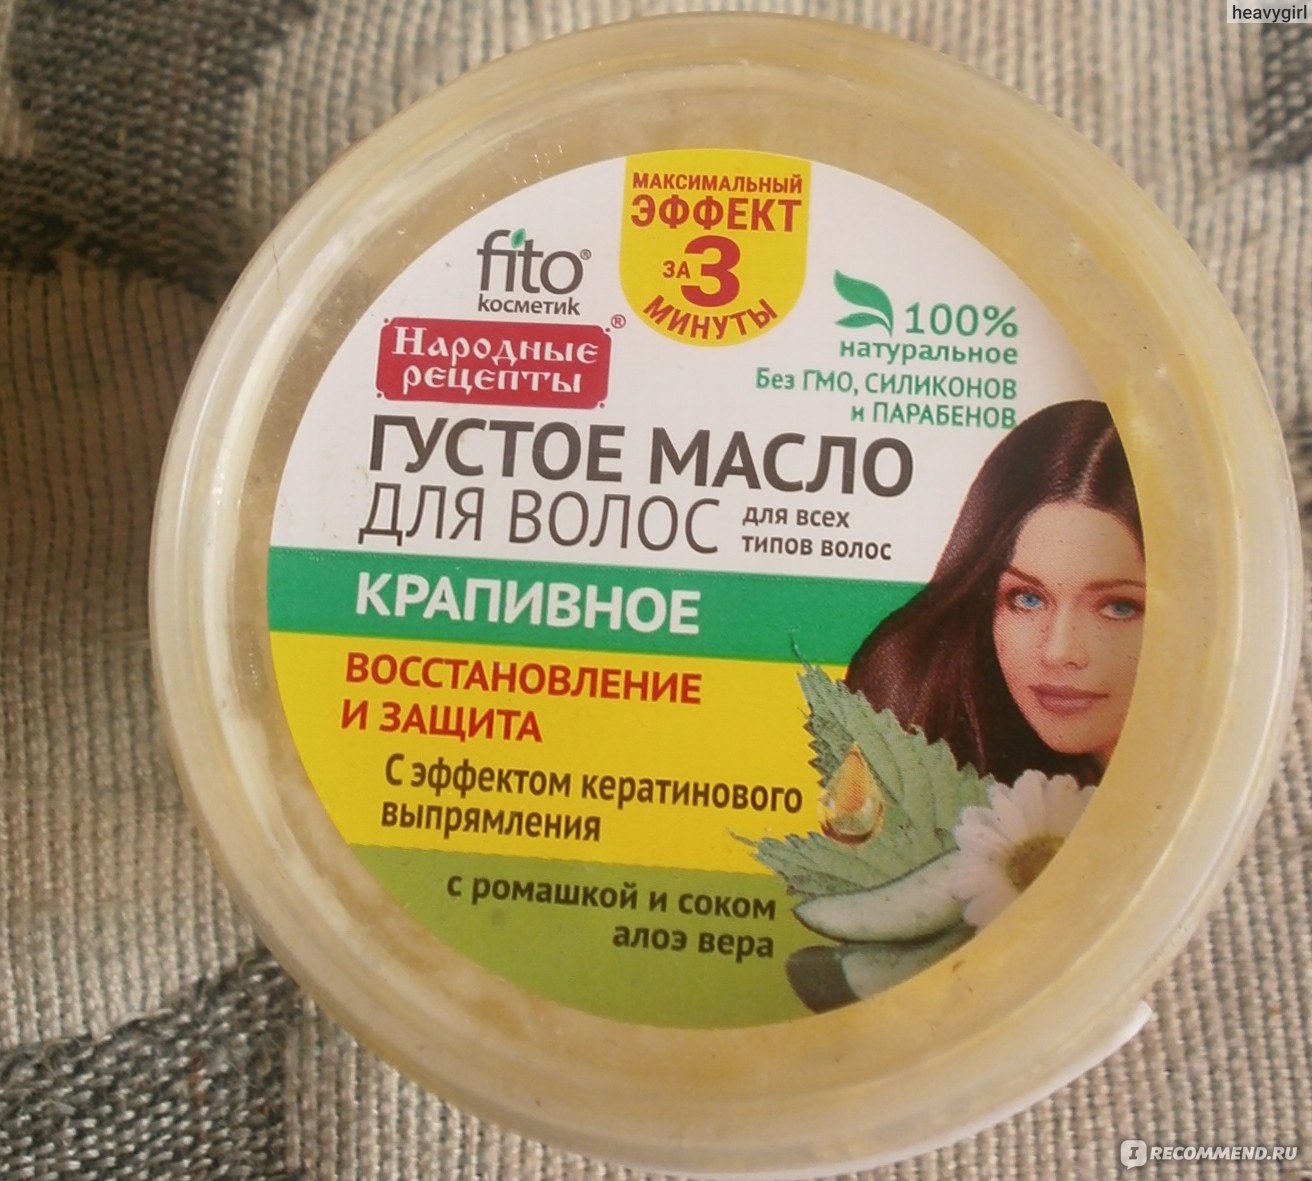 Масло для волос народные рецепты 20мл крапивный